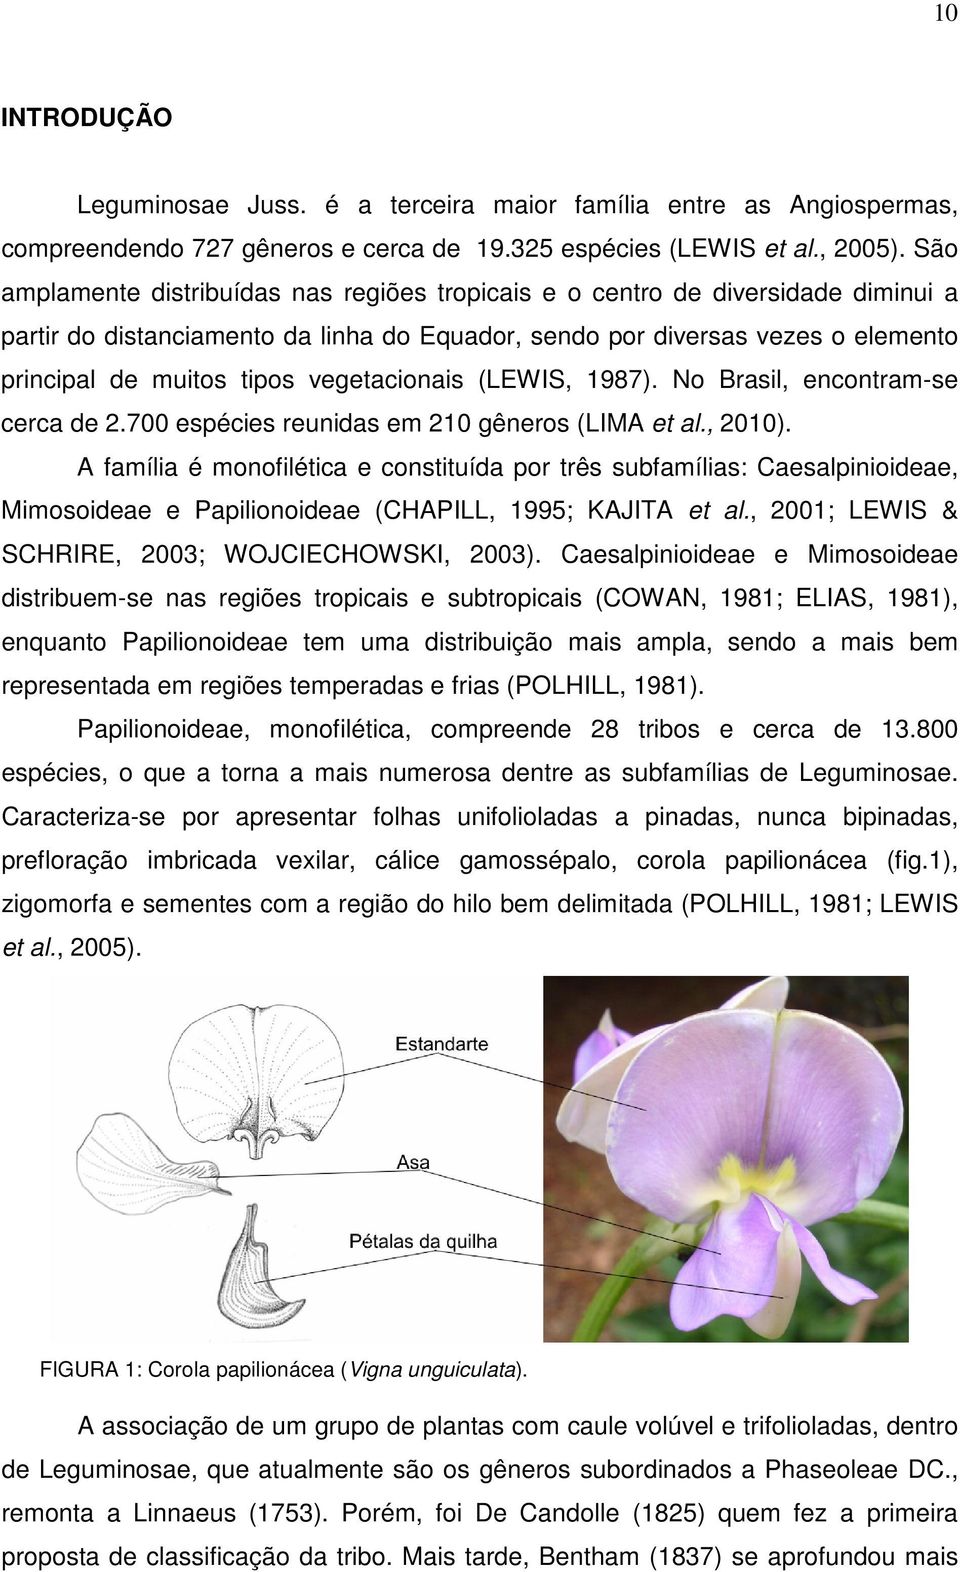 vegetacionais (LEWIS, 1987). No Brasil, encontram-se cerca de 2.700 espécies reunidas em 210 gêneros (LIMA et al., 2010).